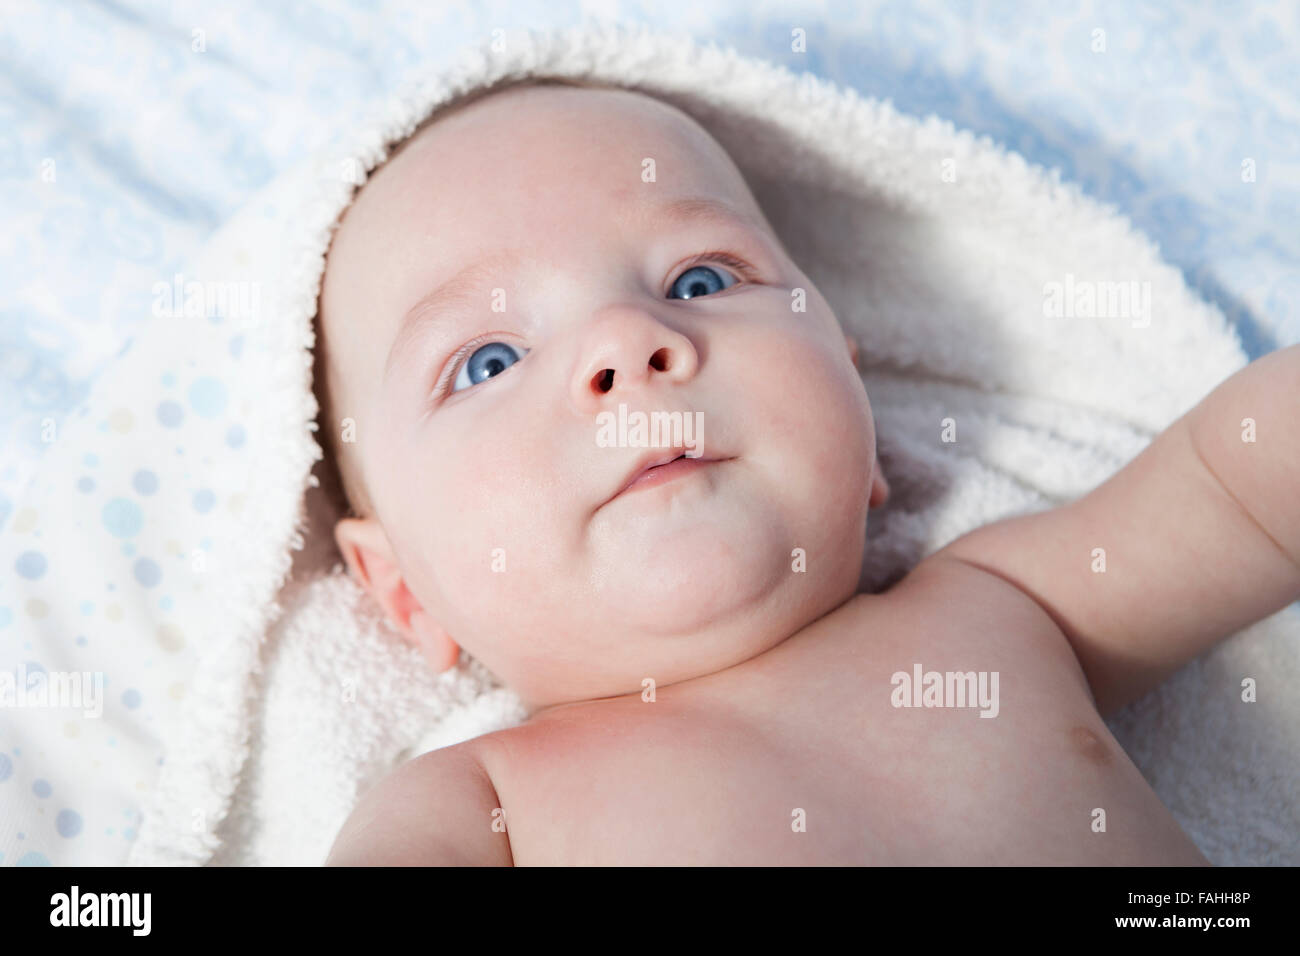 Todler en la ducha bebé divertido en la ducha baby shower retrato de niño  bañándose en un baño con espuma